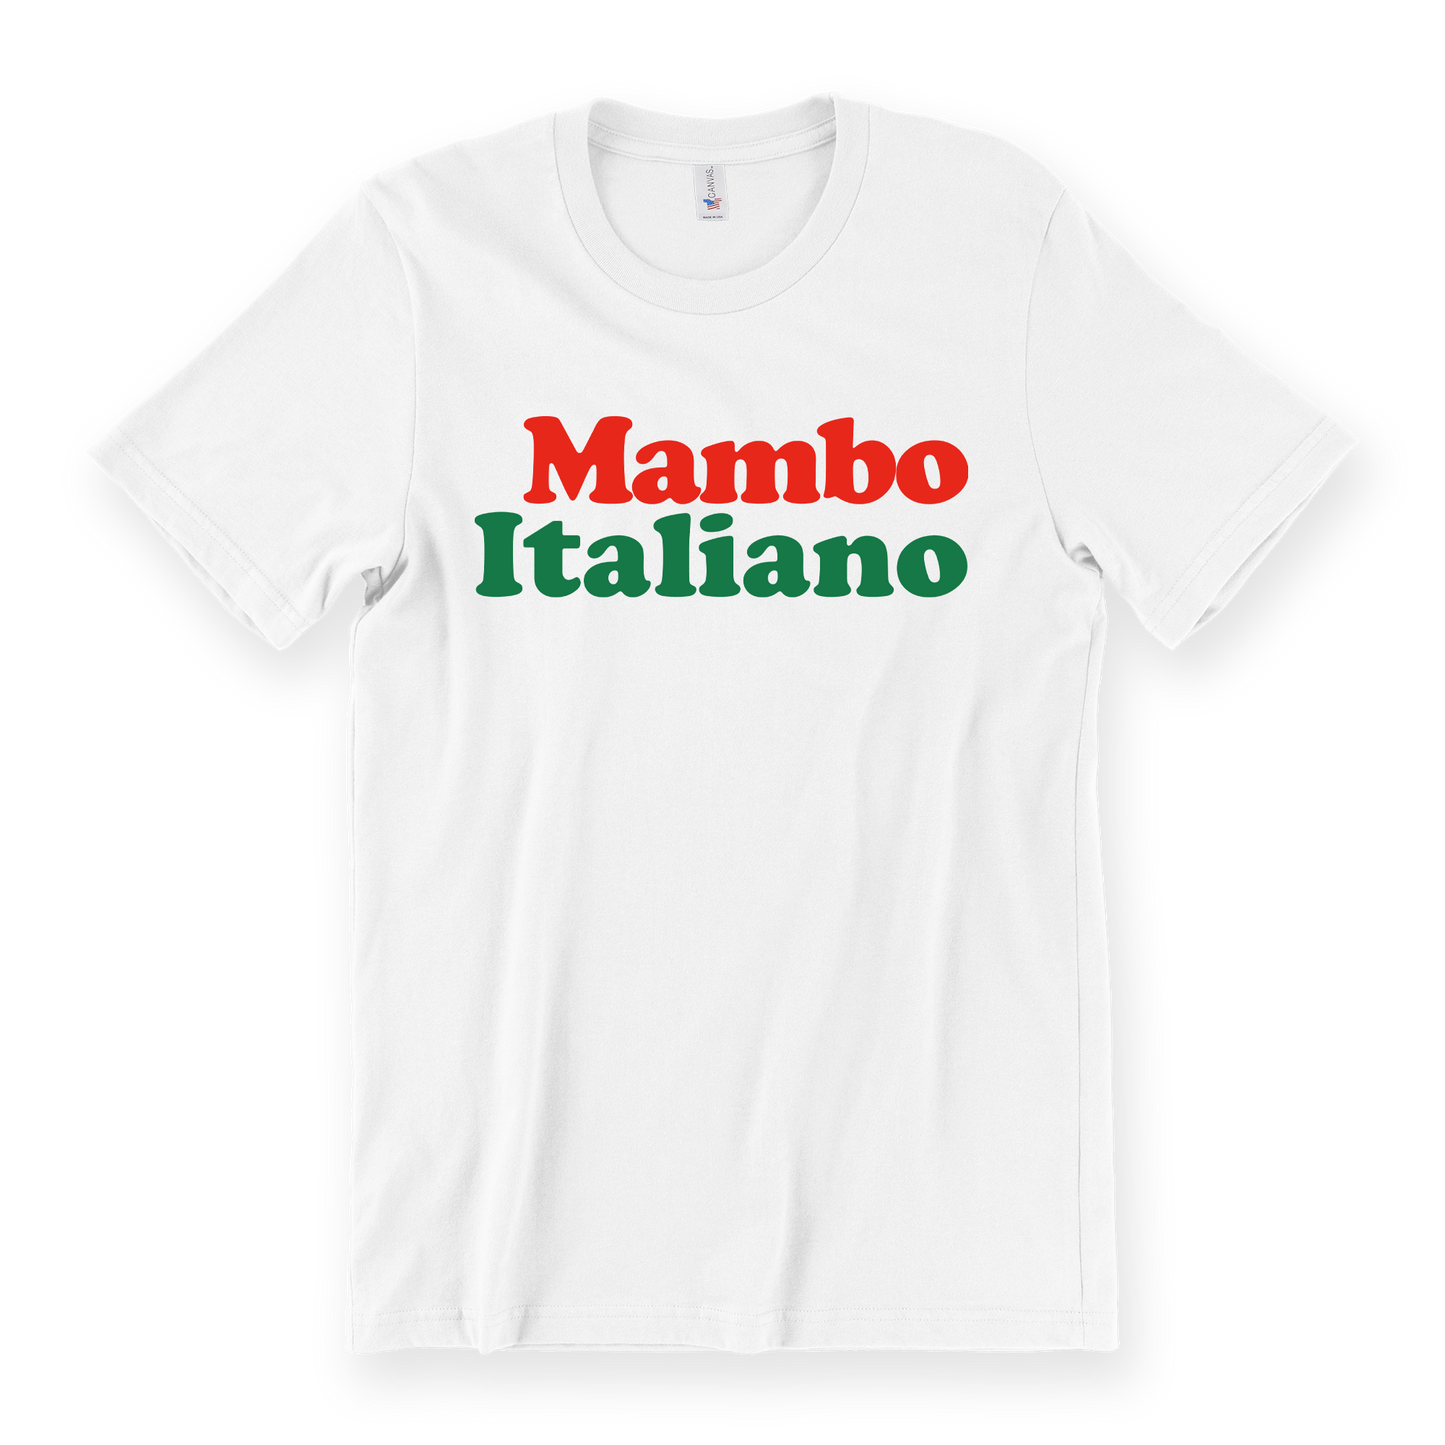 Mambo Italiano Tee - White